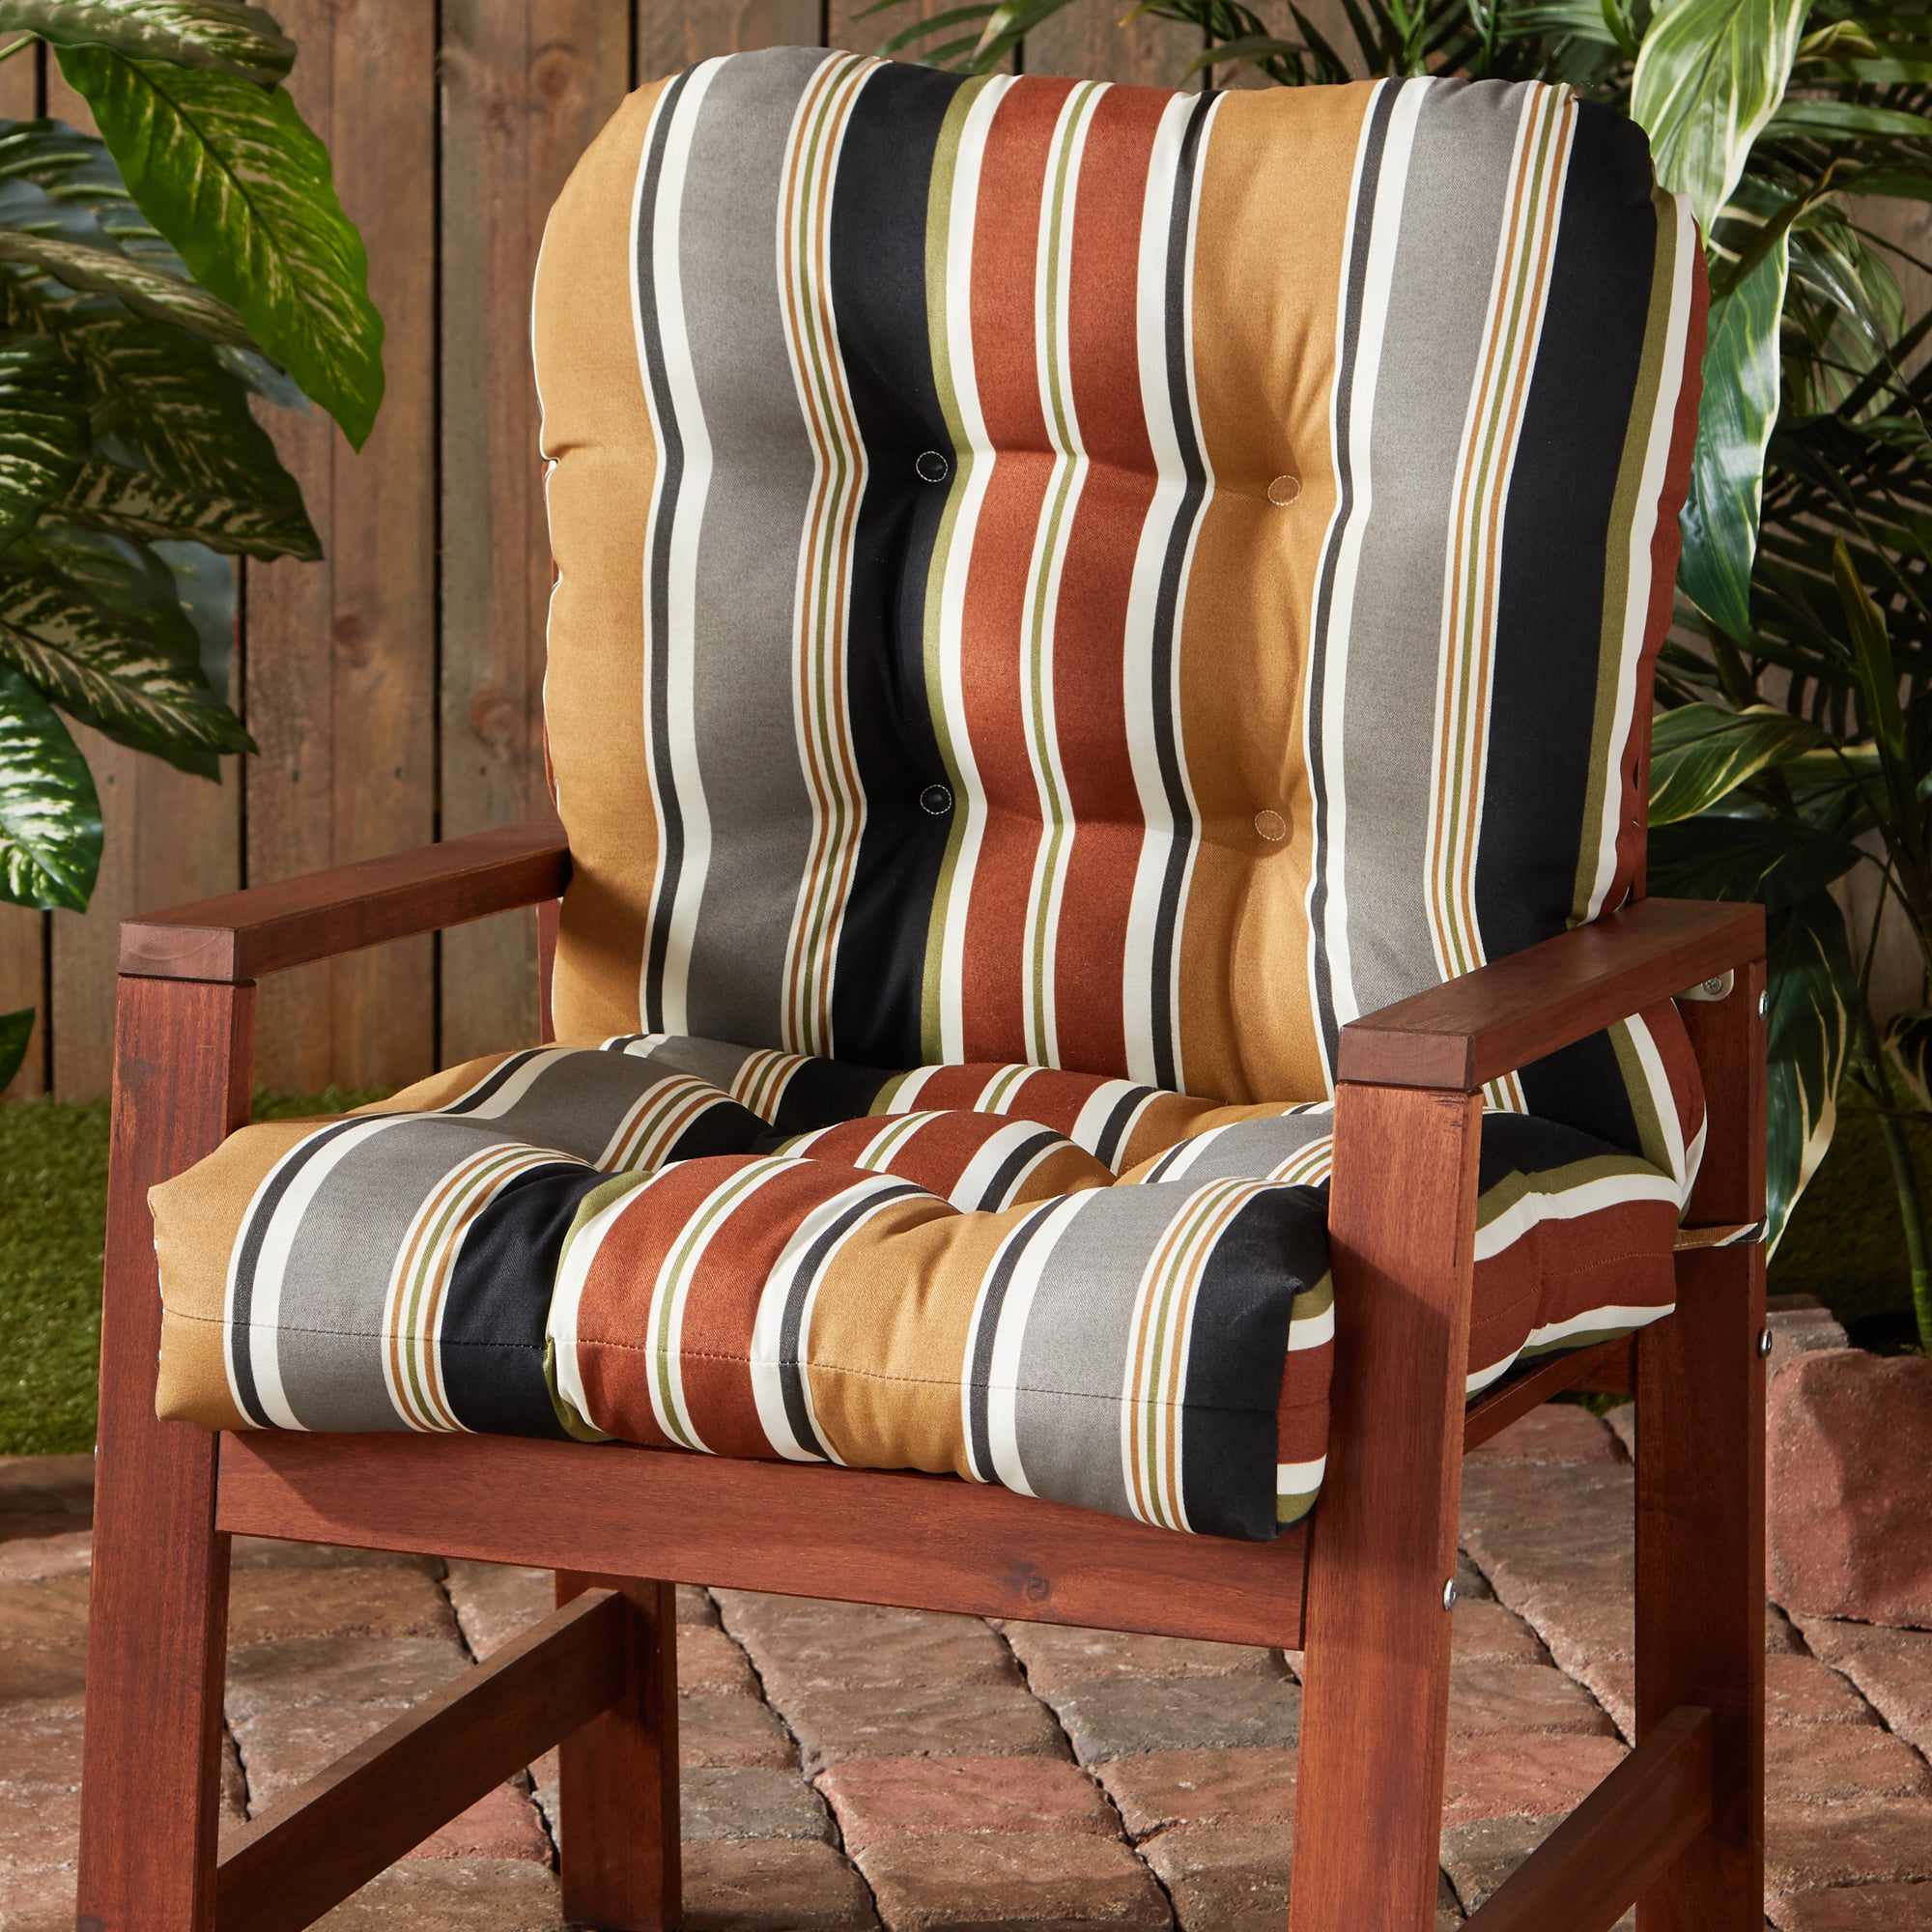 Brick Stripe Outdoor Chair Cushion - Walmart.com